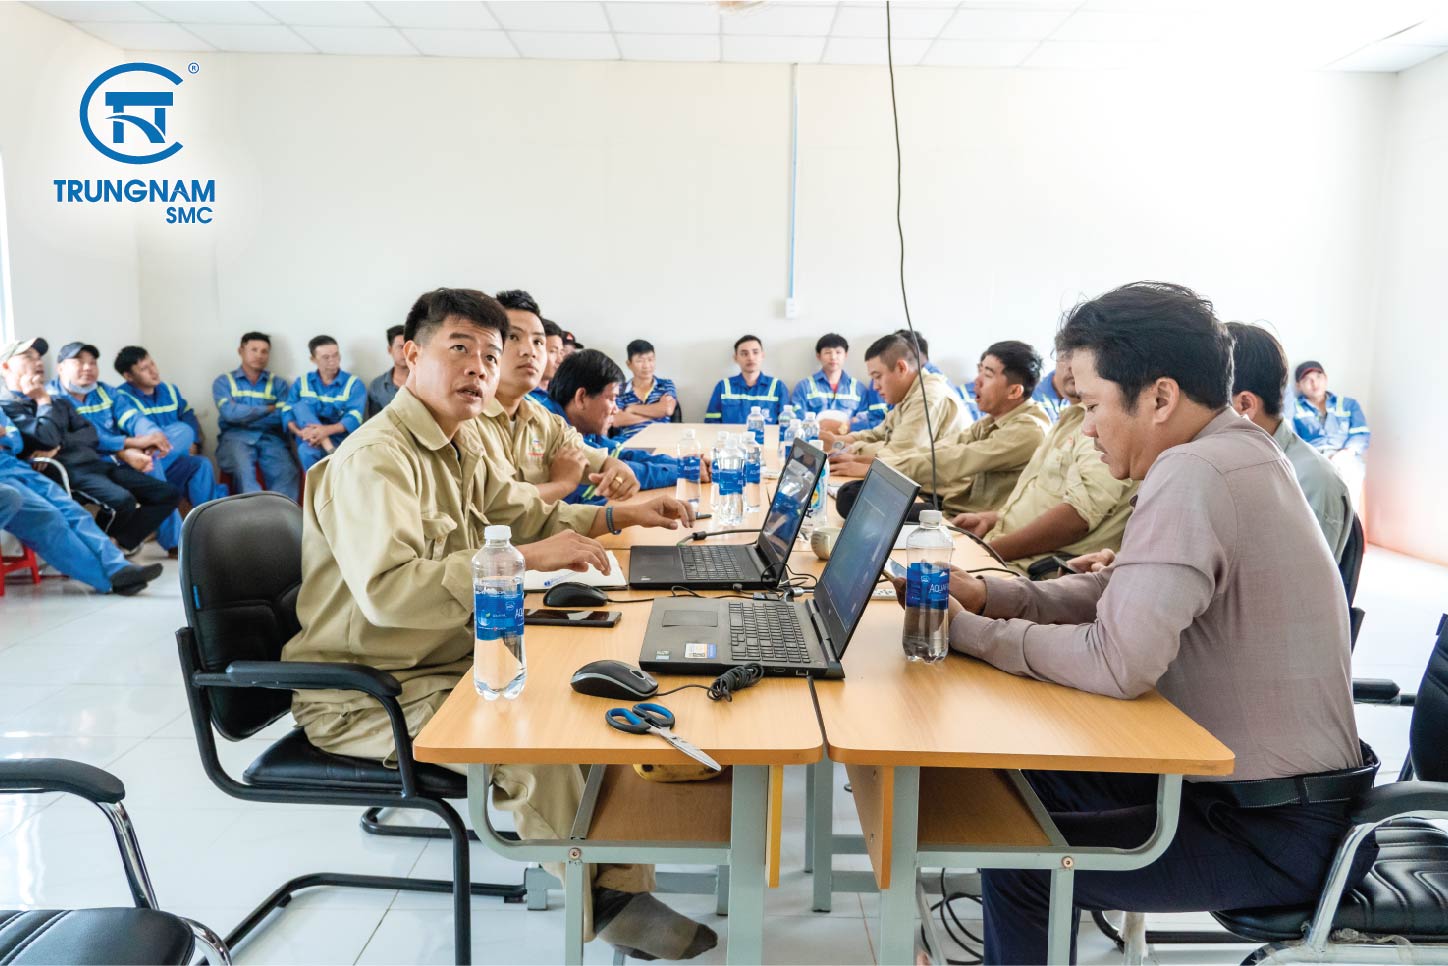 Trungnam SMc tổ chức đào tạo cho CBNV tại văn phòng Ban điều hành Đắk Lắk.